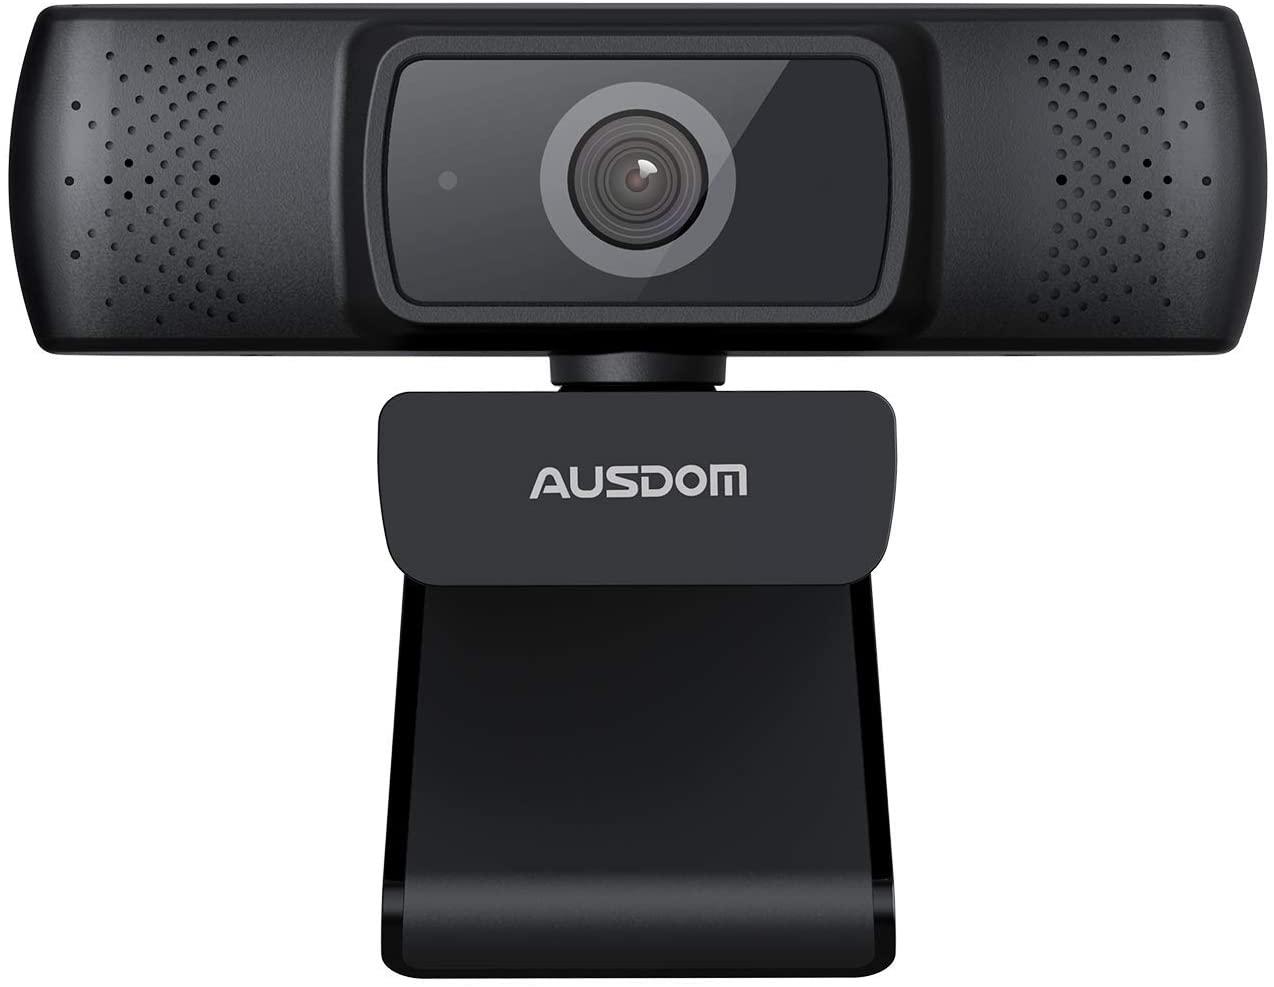 Ausdom autofocus webkamera webbkamera webcam prylar-se